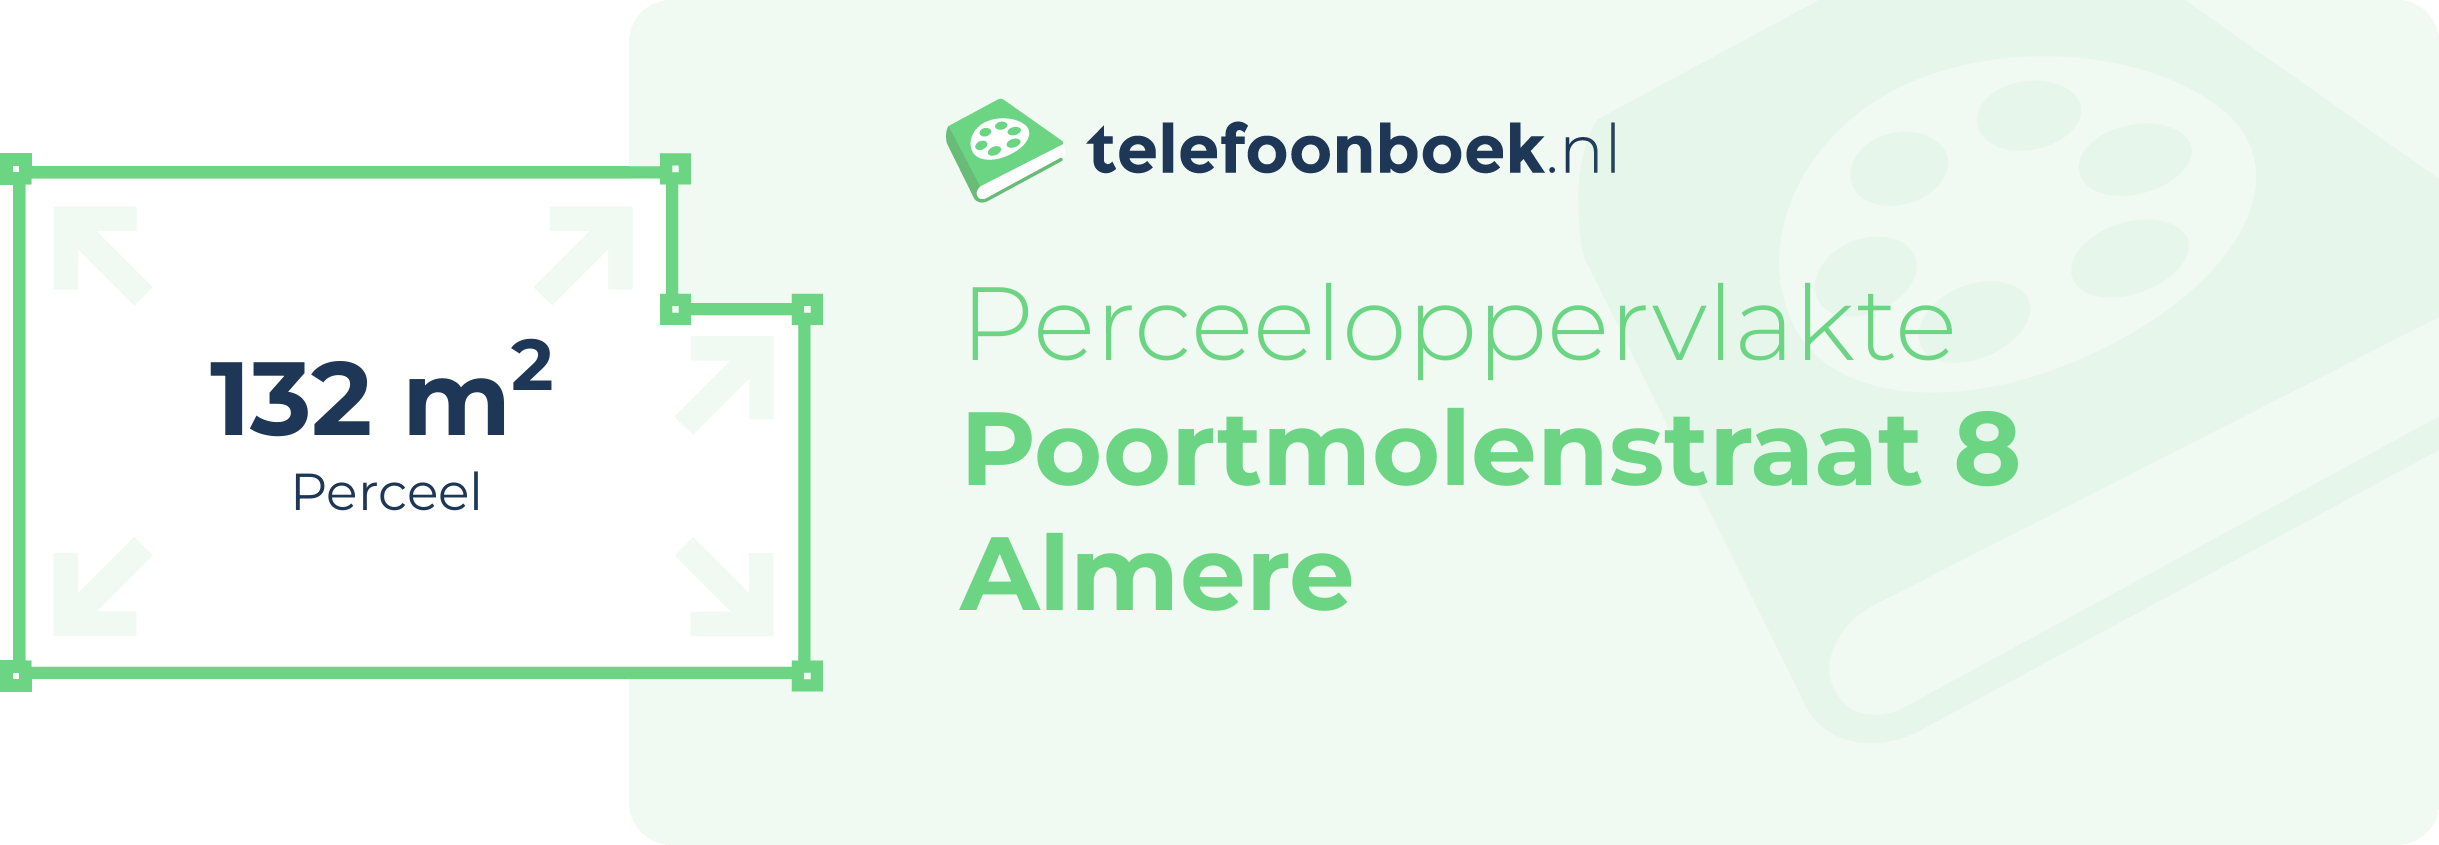 Perceeloppervlakte Poortmolenstraat 8 Almere